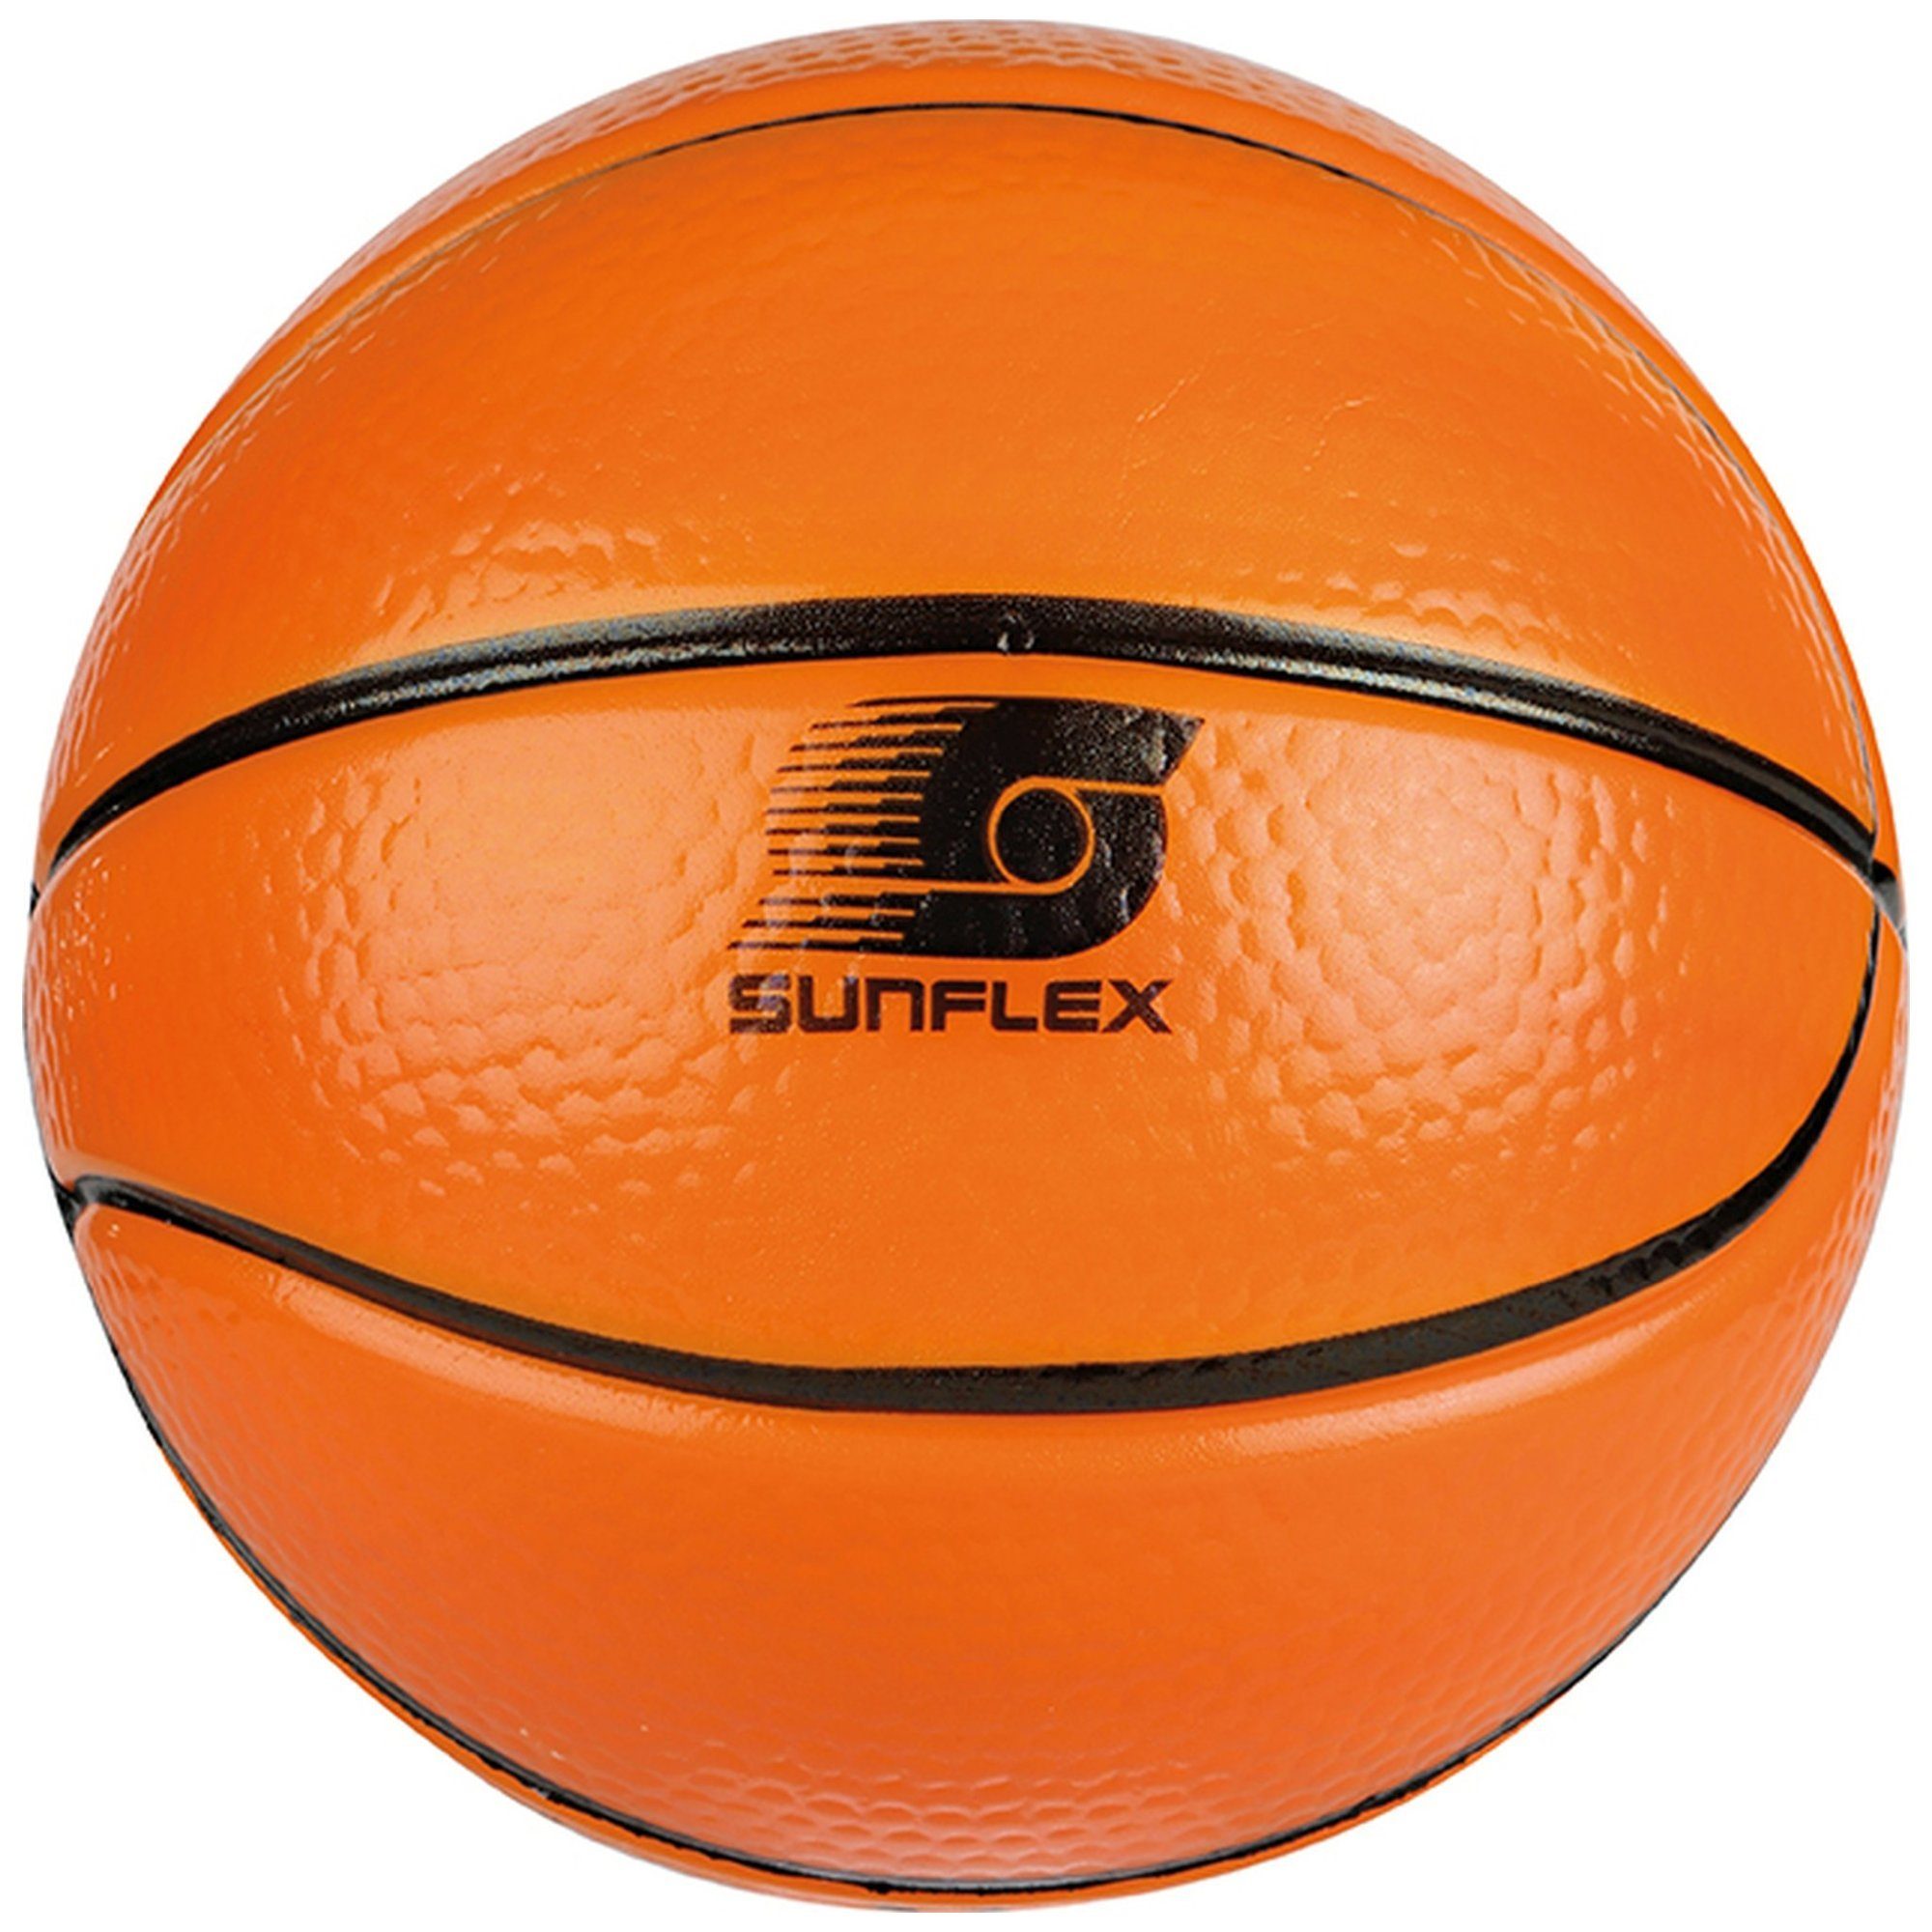 Softball Basketball Basketball sunflex Sunflex